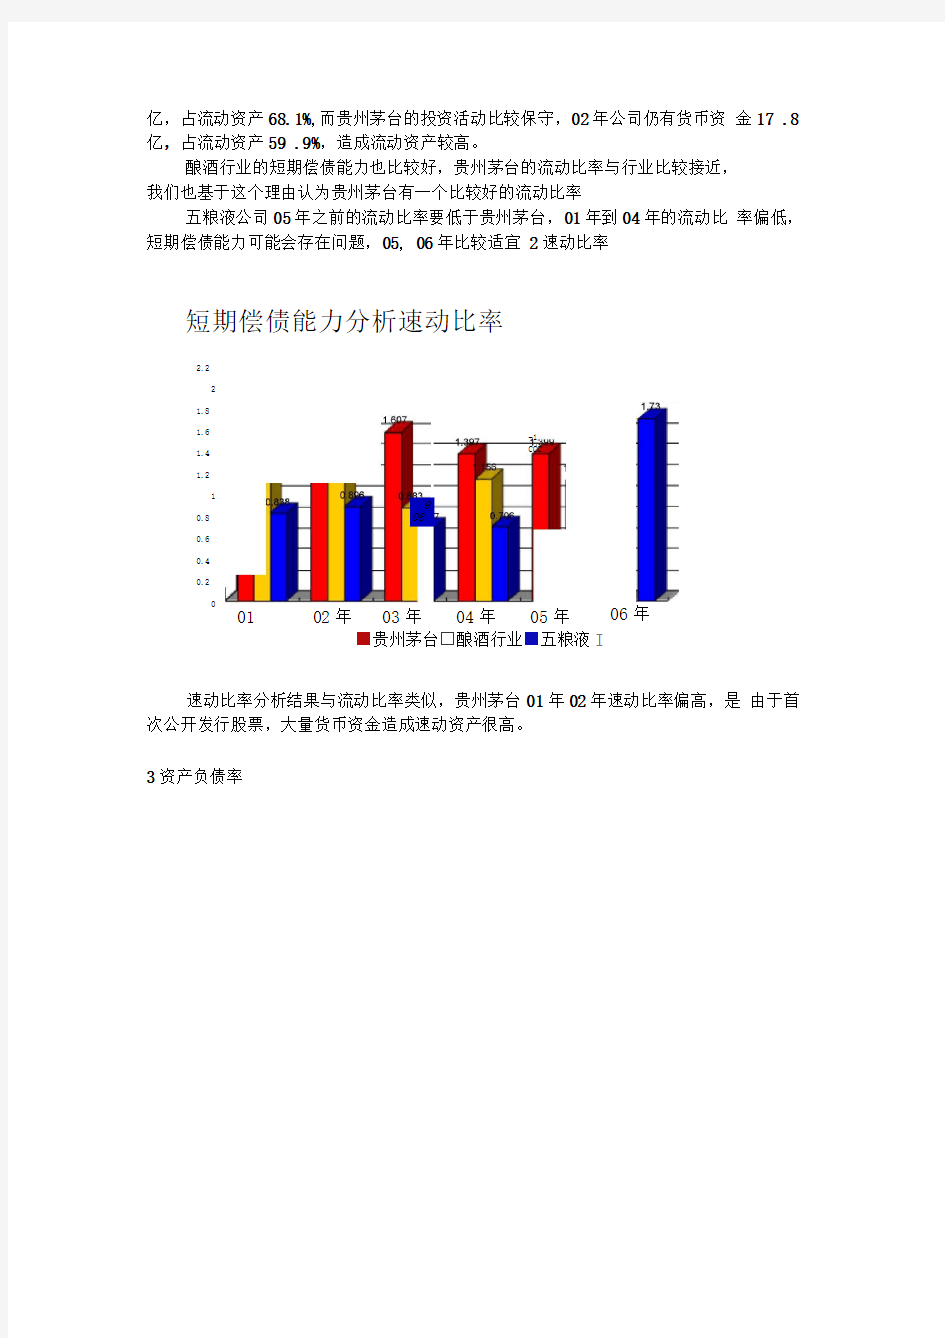 贵州茅台股份有限公司财务分析案例展示